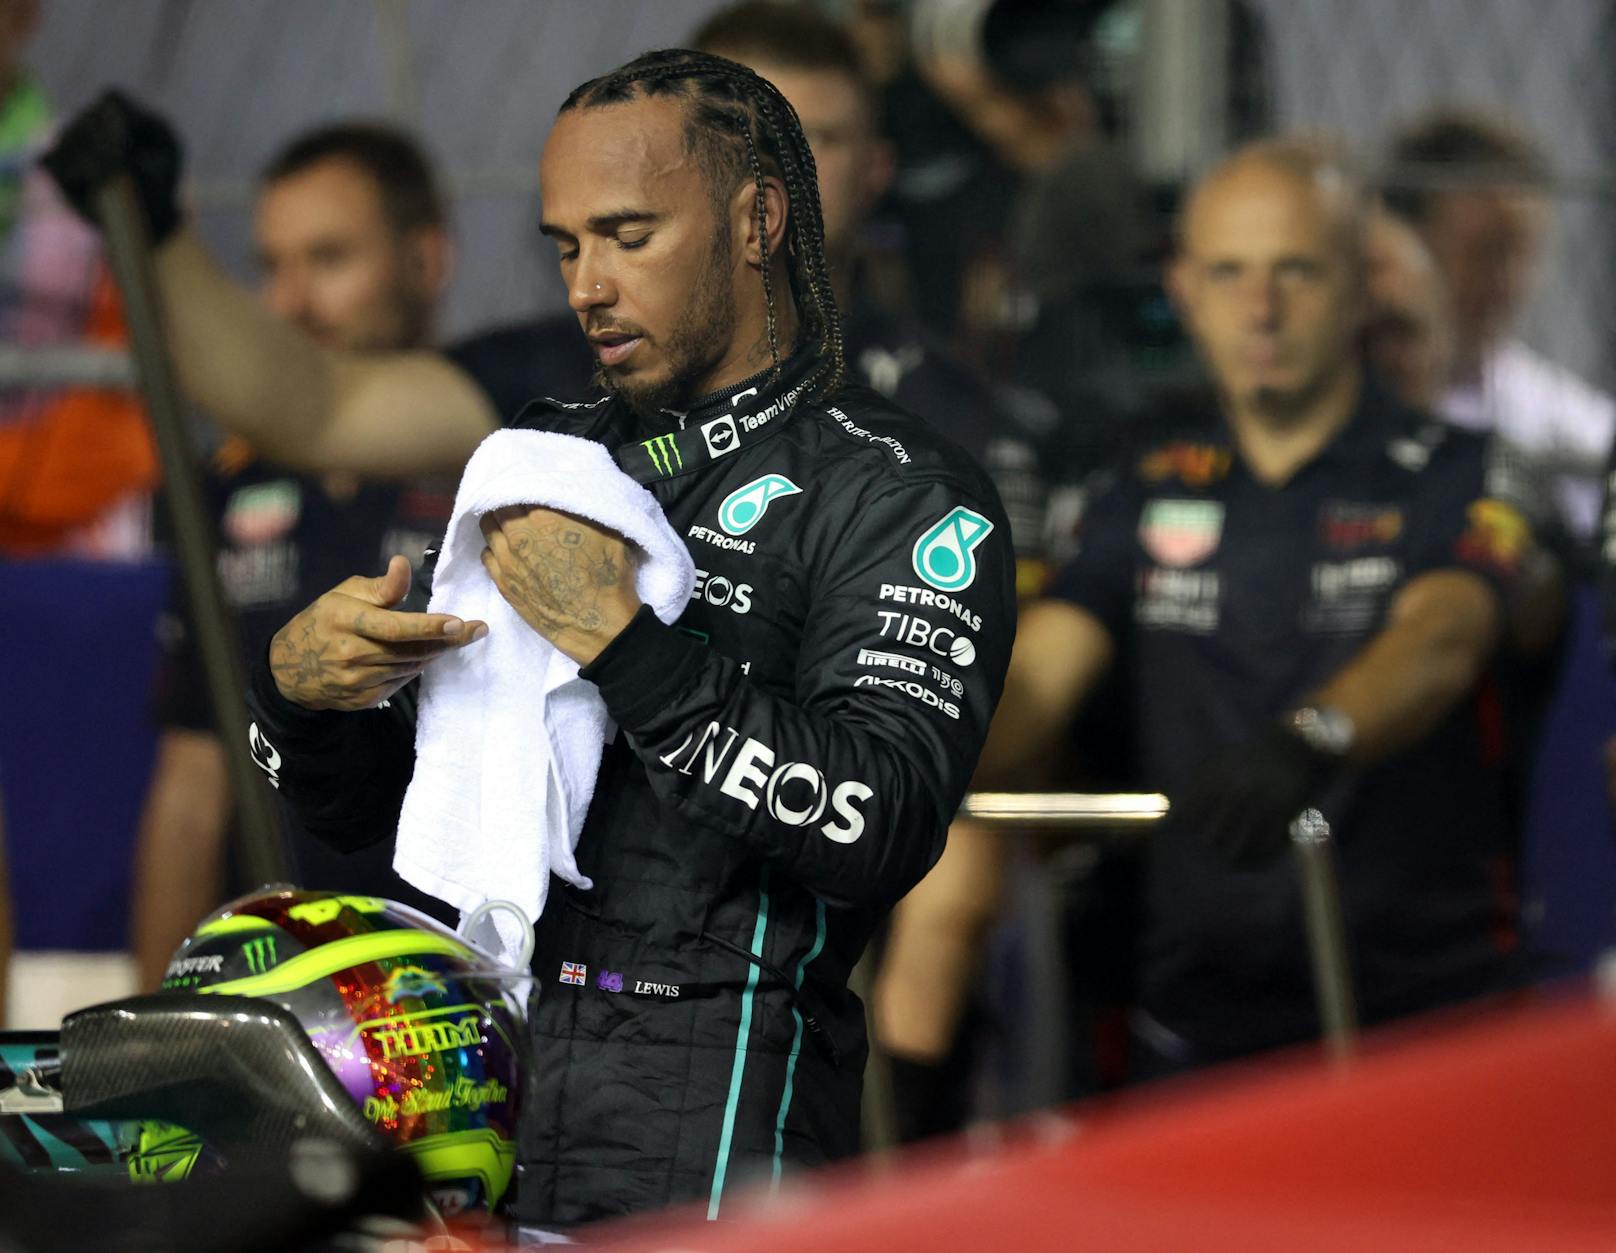 9. Lewis Hamilton (Mercedes) - Note: 3. Der Rekordchampion war ganz stark unterwegs, hat sich aber dann verbremst und mit dem Kracher in den Reifenstapel die Chance auf einen Podestplatz weggeworfen - schade